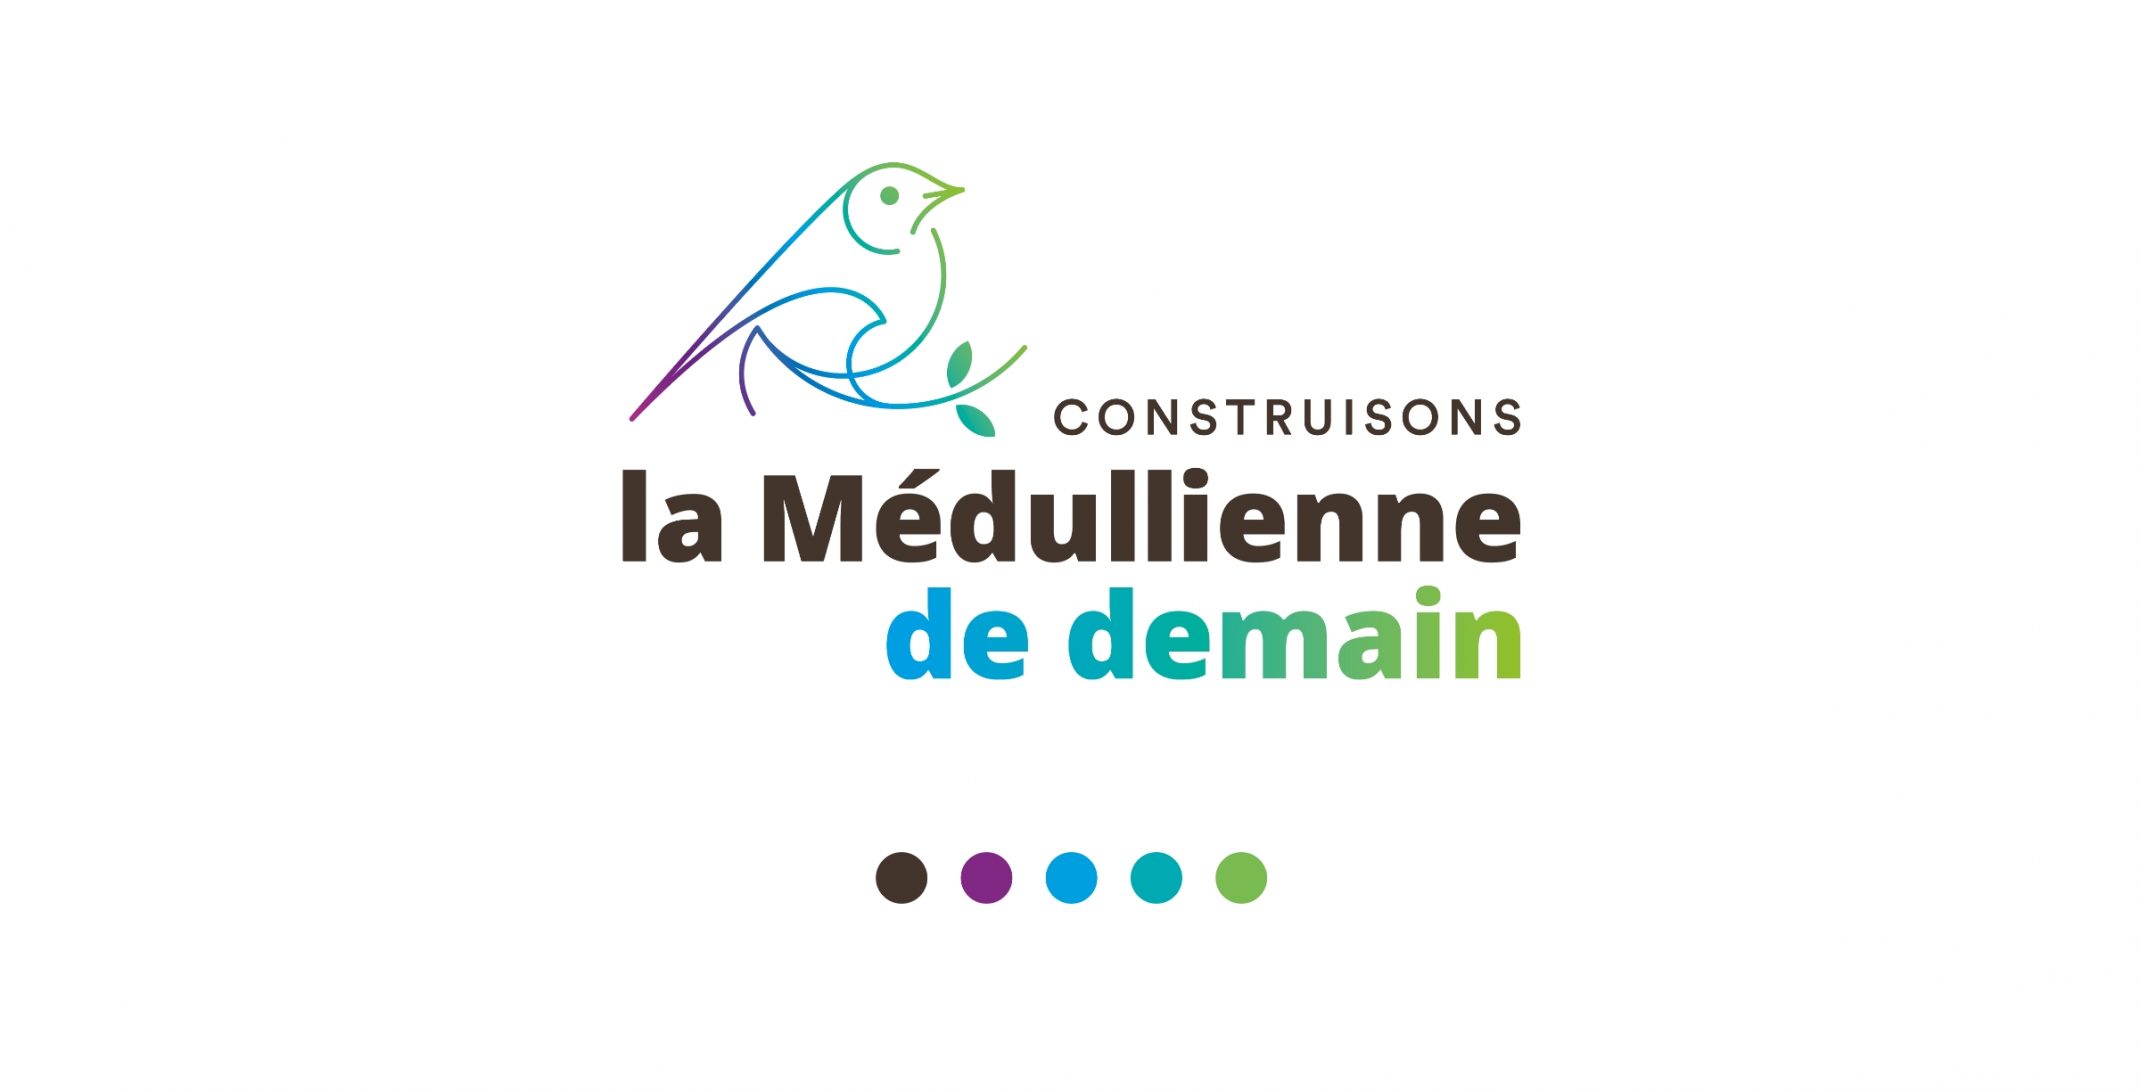 medullienne-logo